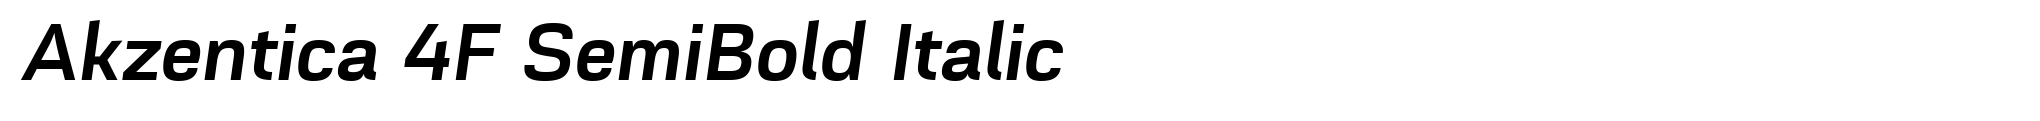 Akzentica 4F SemiBold Italic image